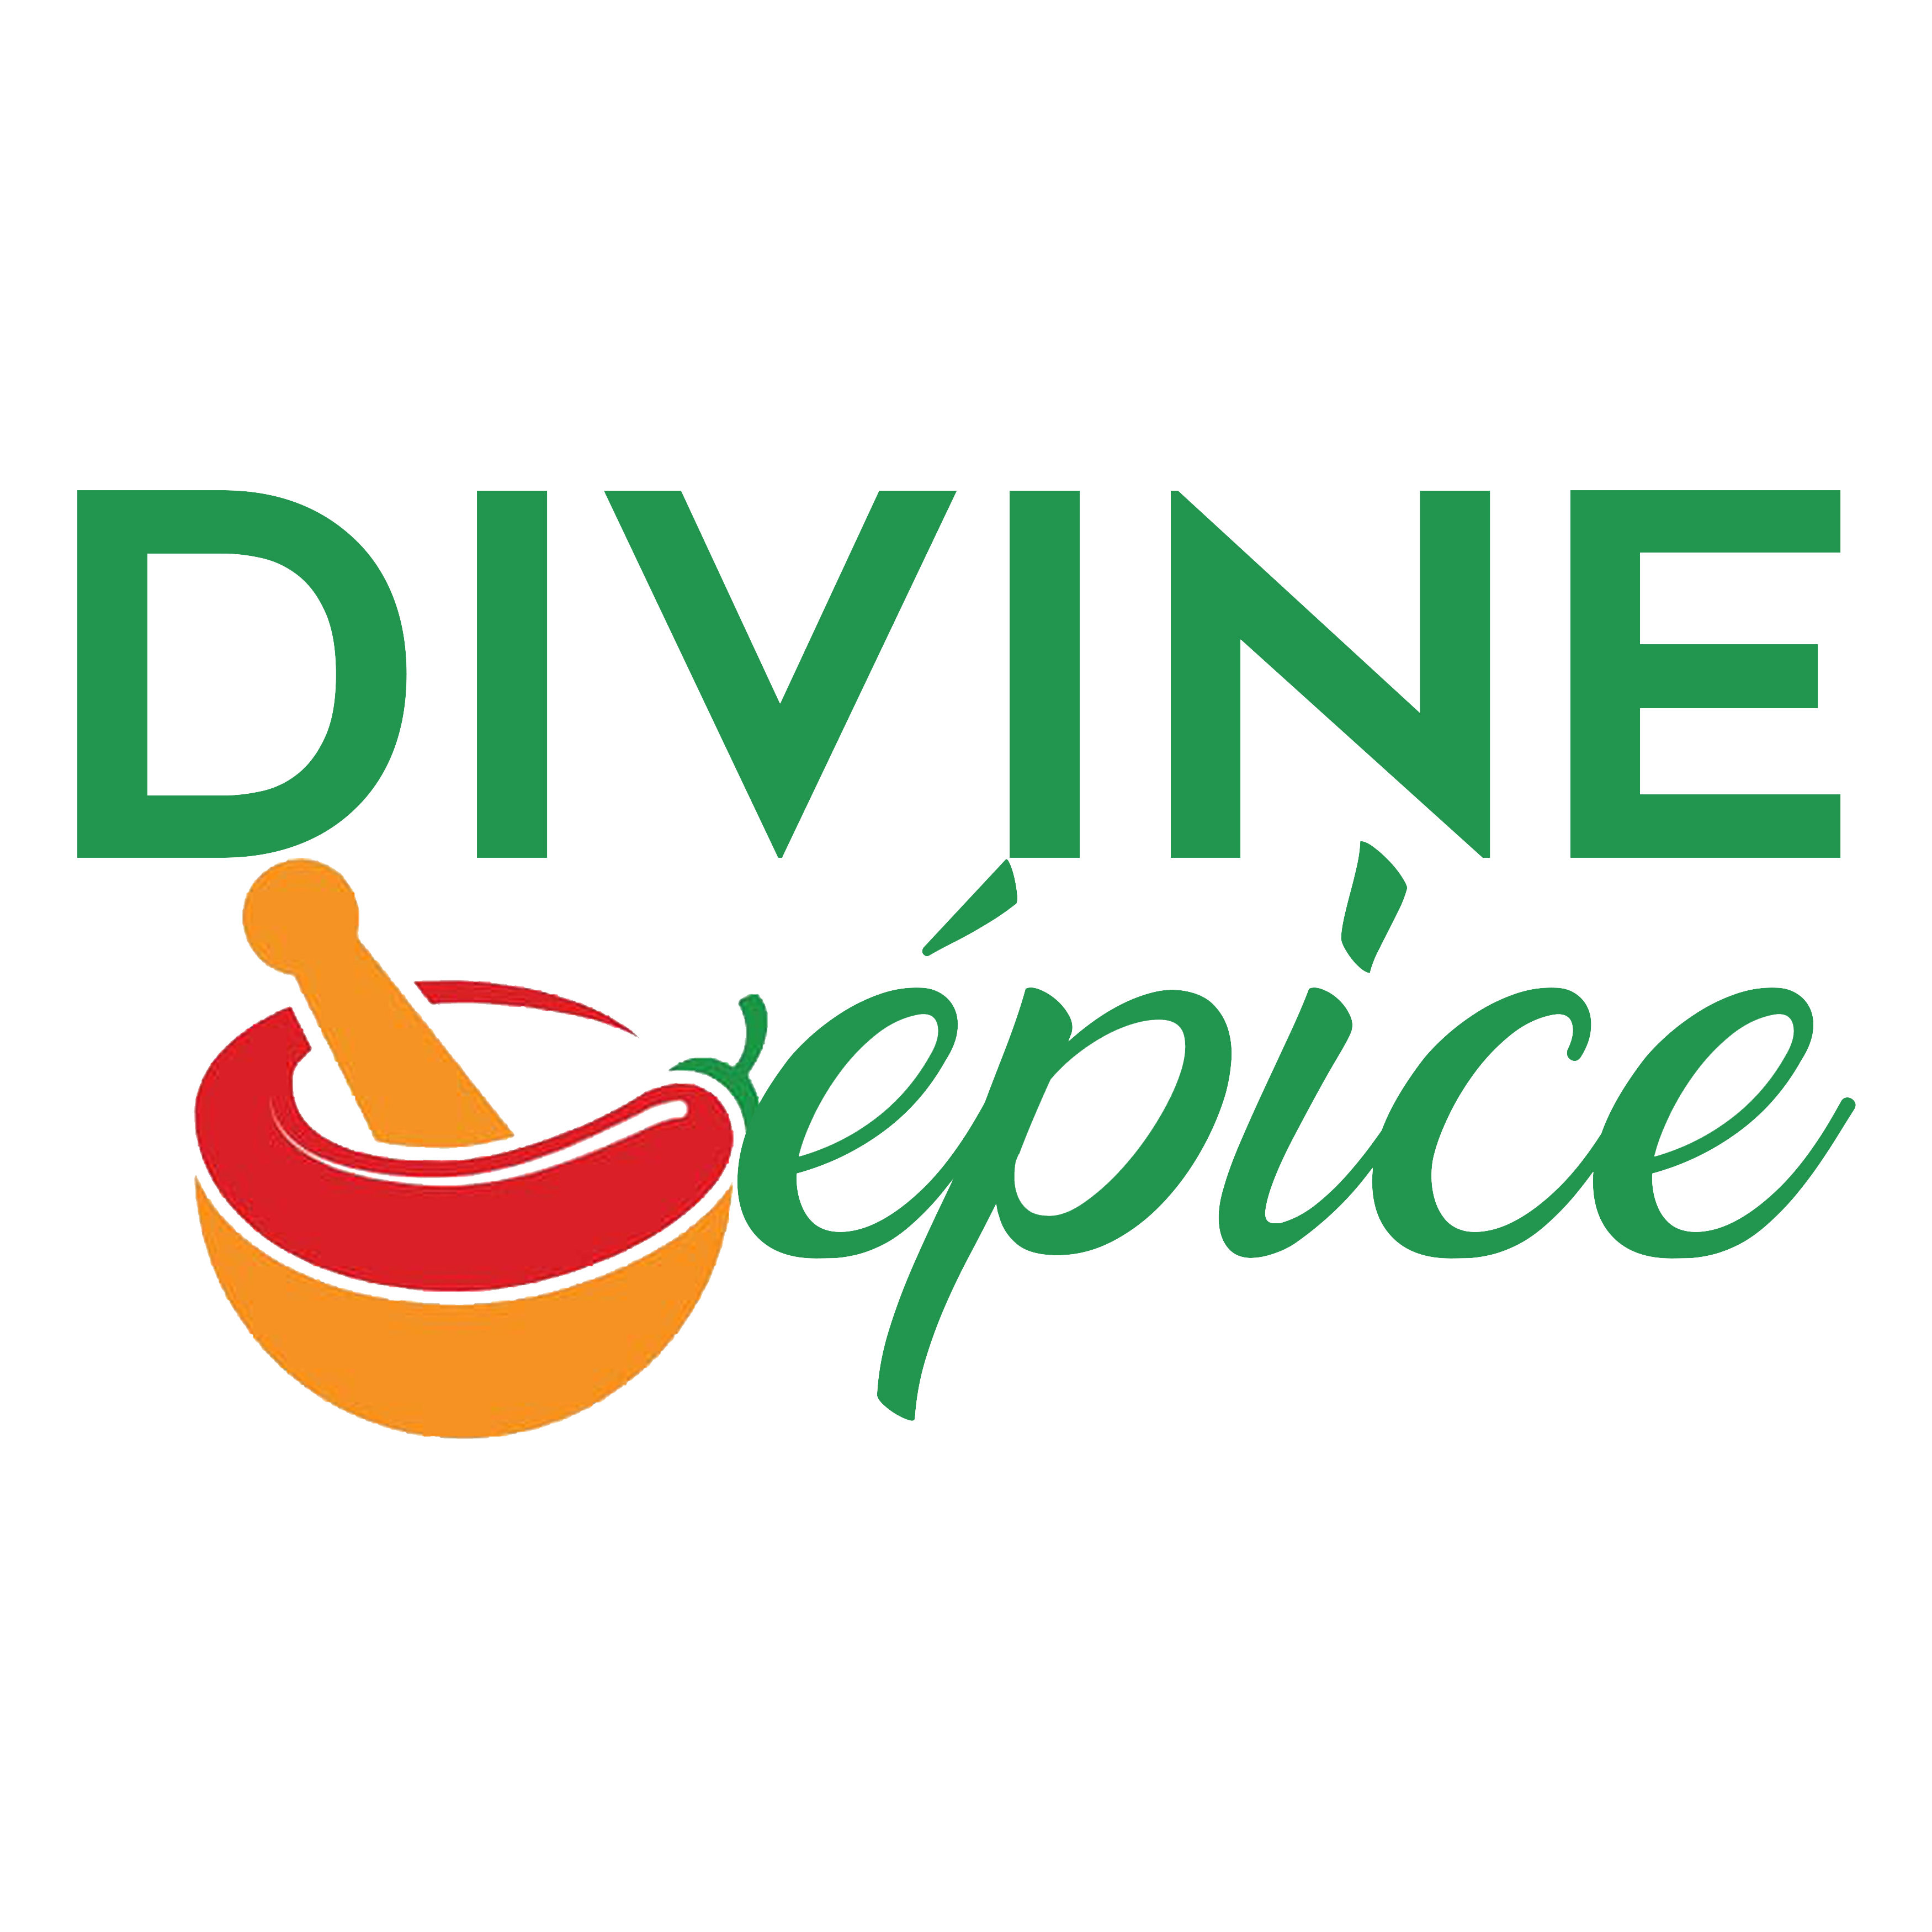 Divine epice